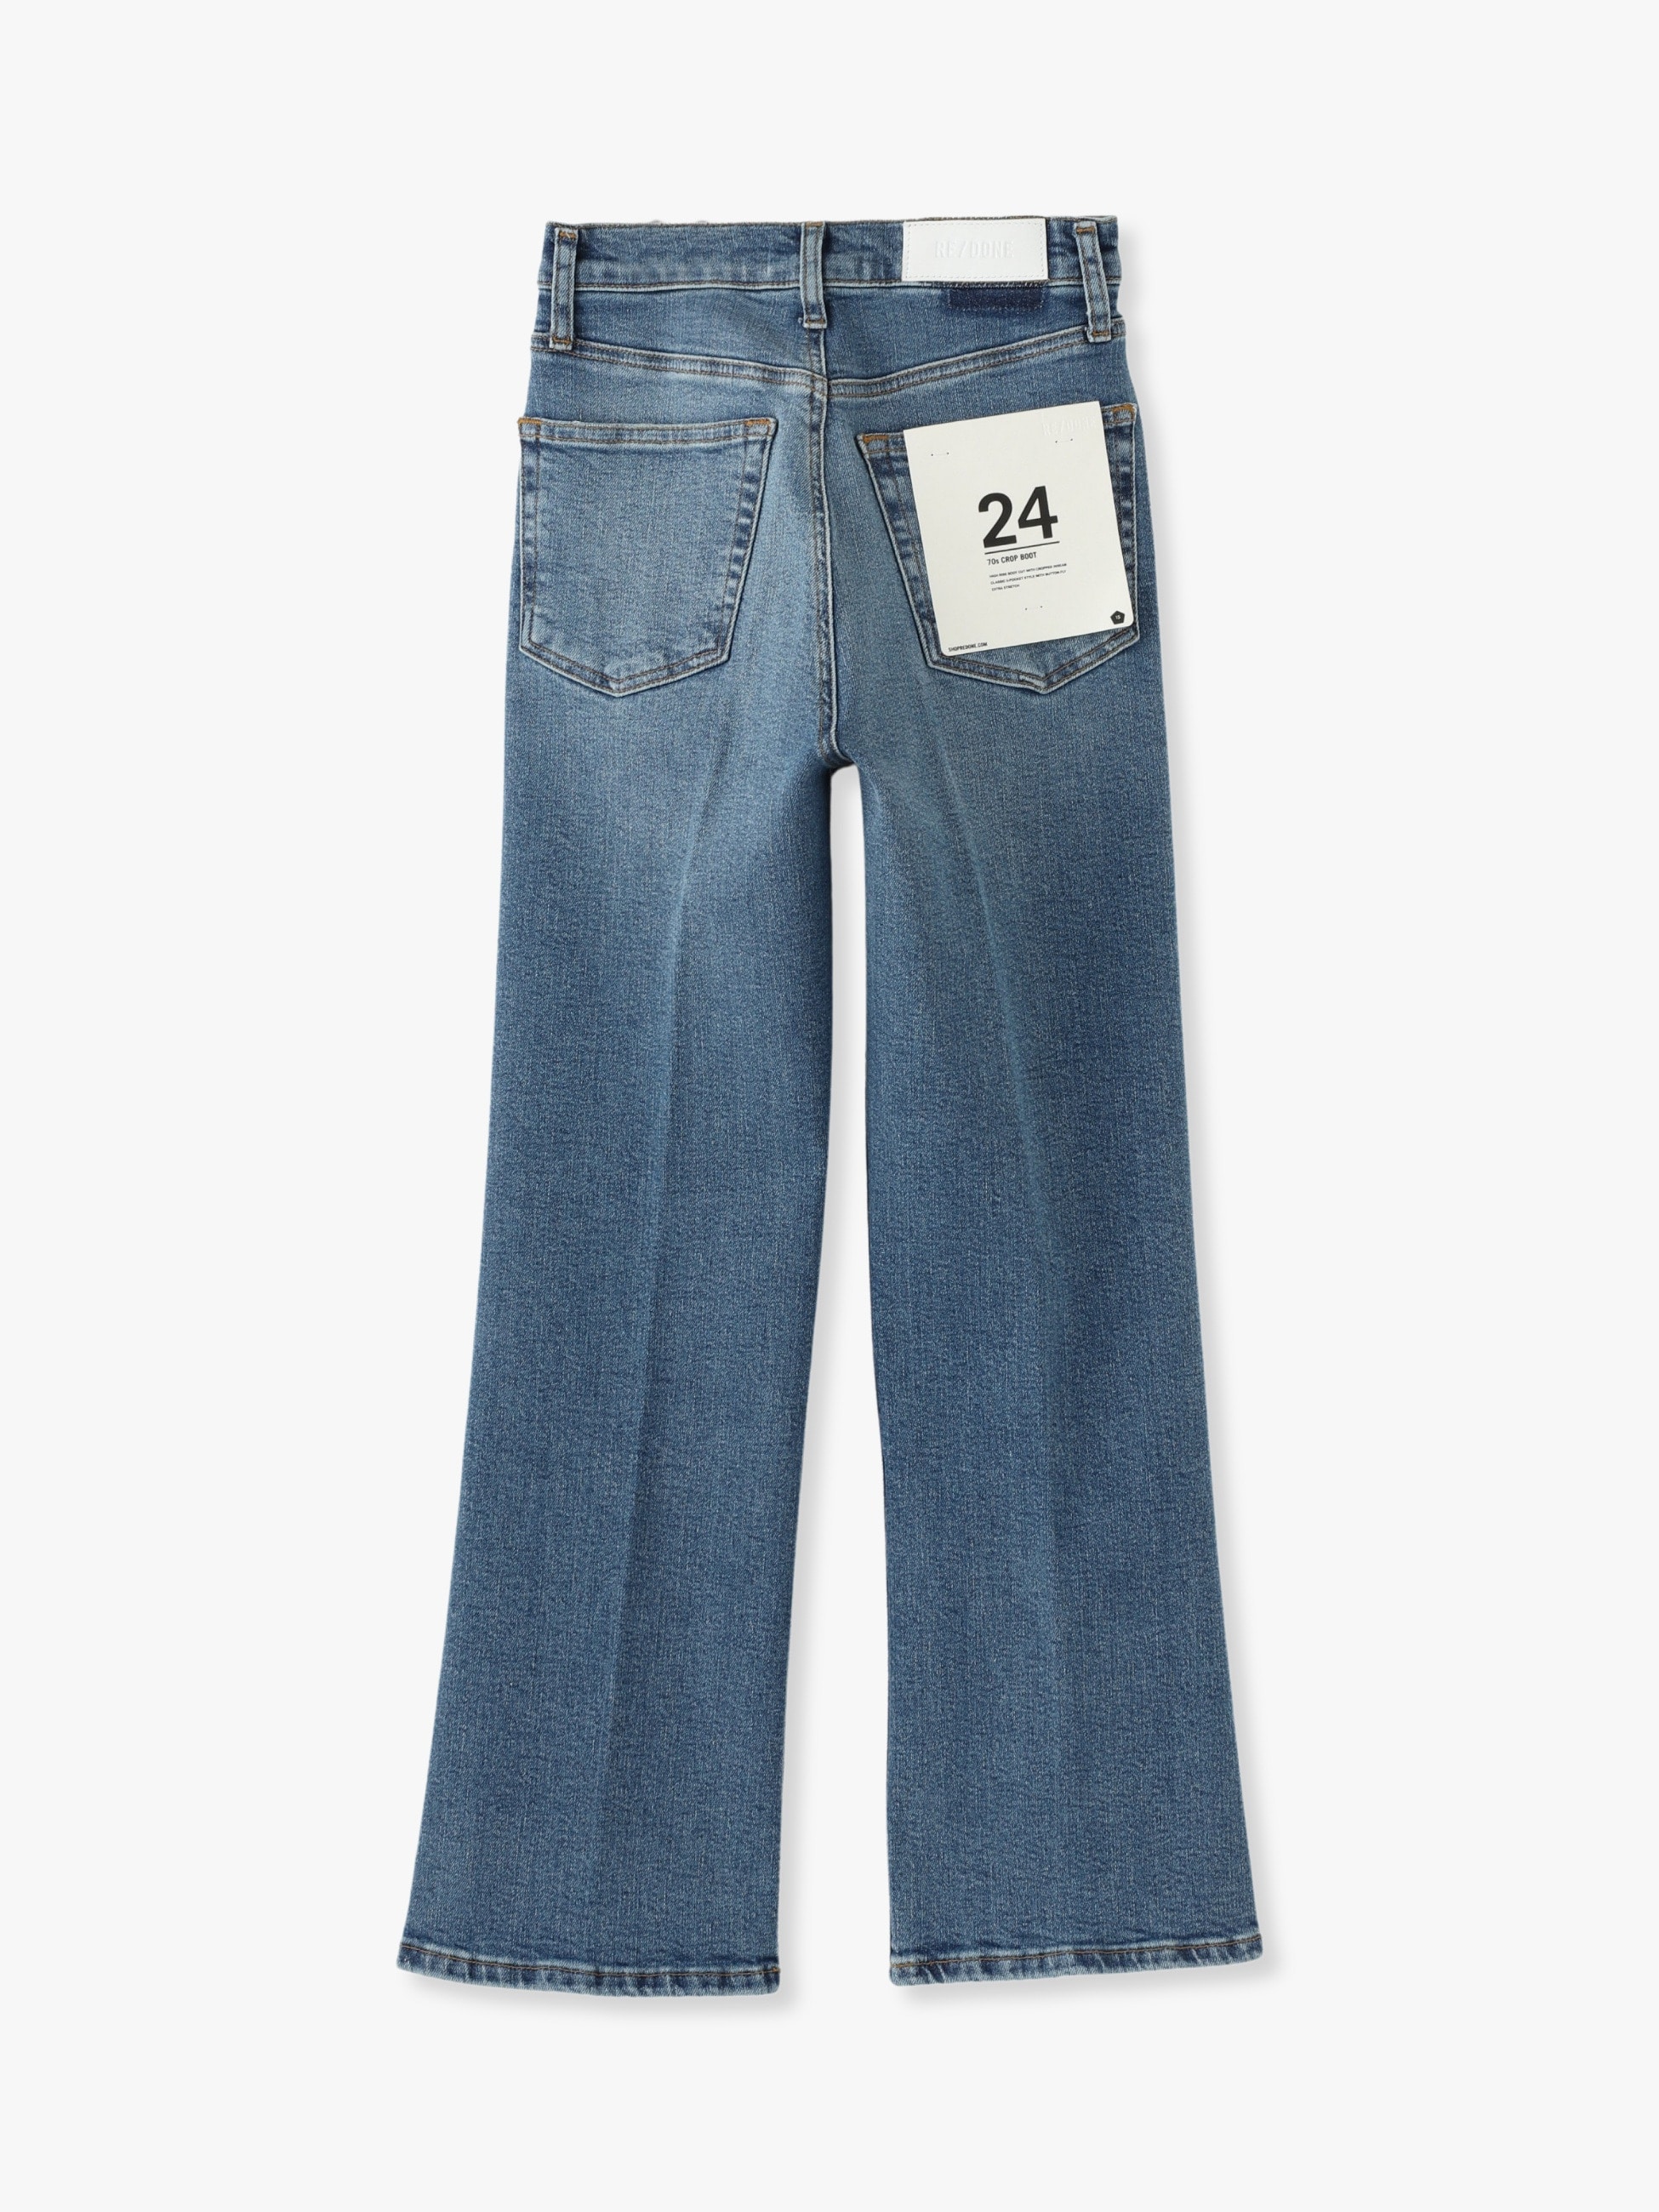 70s Crop Bootscut Denim Pants